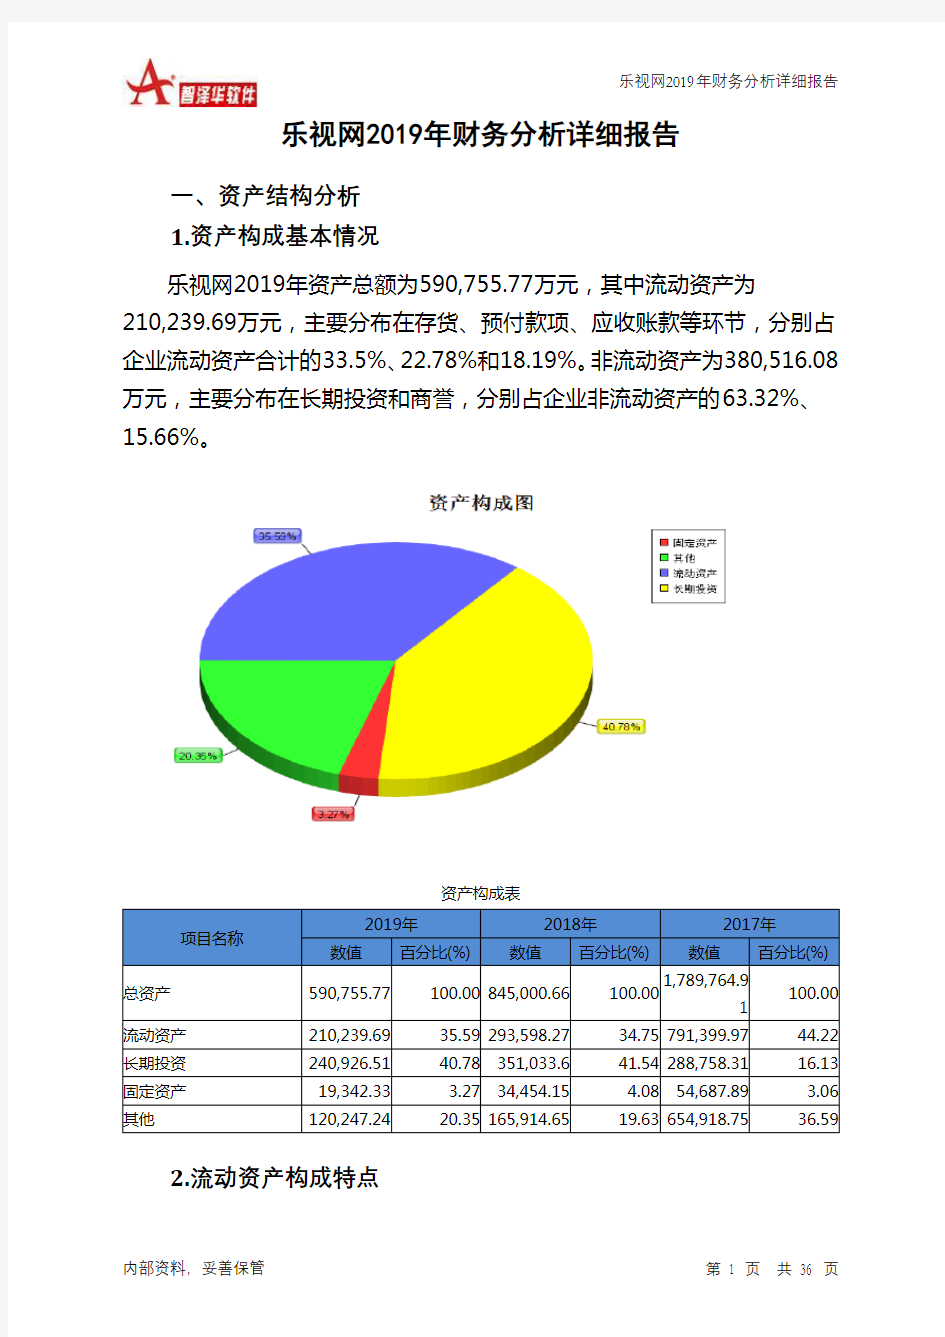 乐视网2019年财务分析详细报告